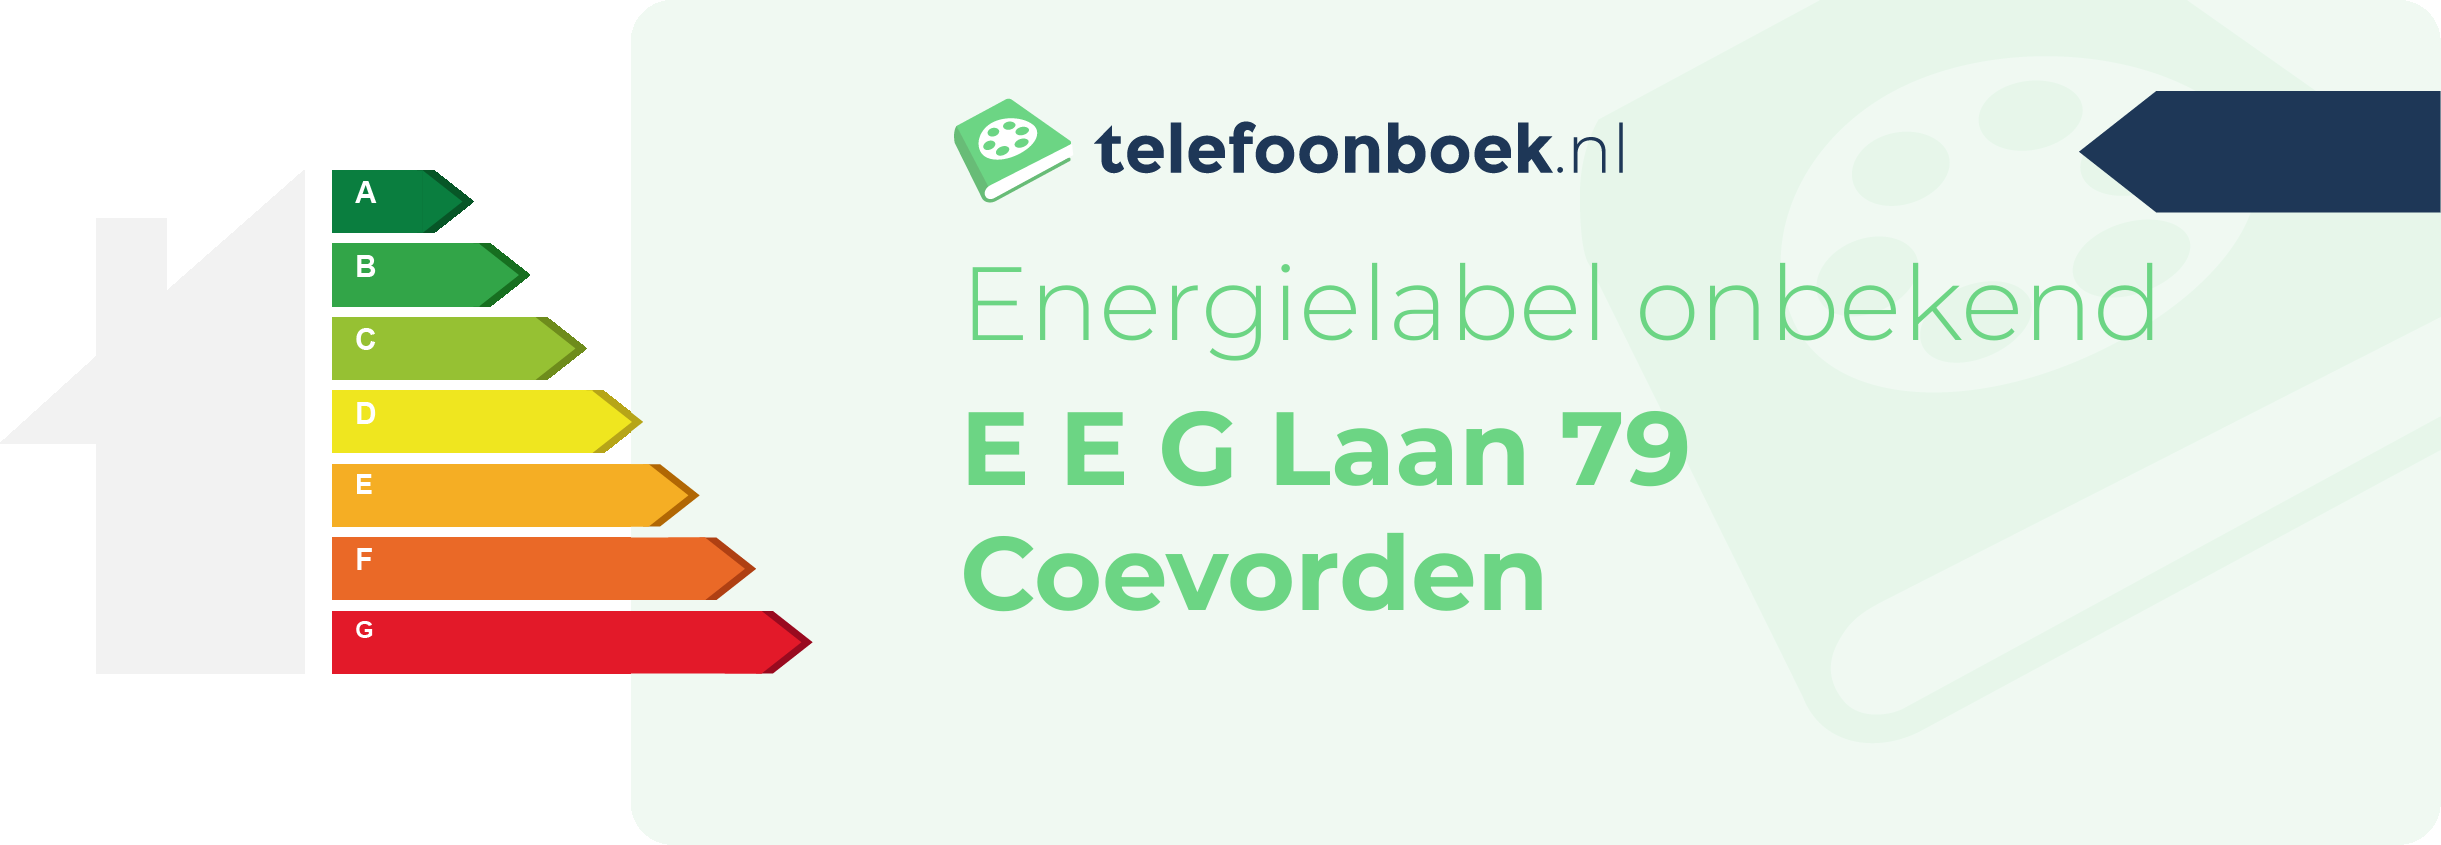 Energielabel E E G Laan 79 Coevorden